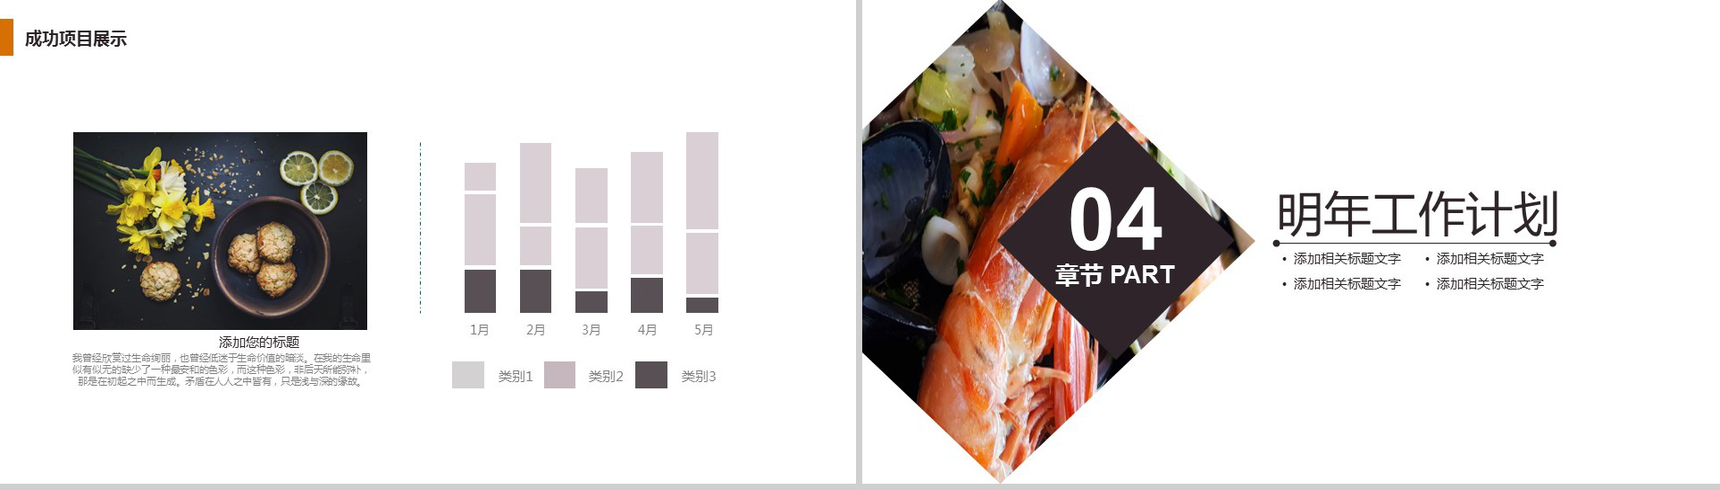 大气精美商务海鲜推广宣传餐饮美食年终汇报PPT模板-10